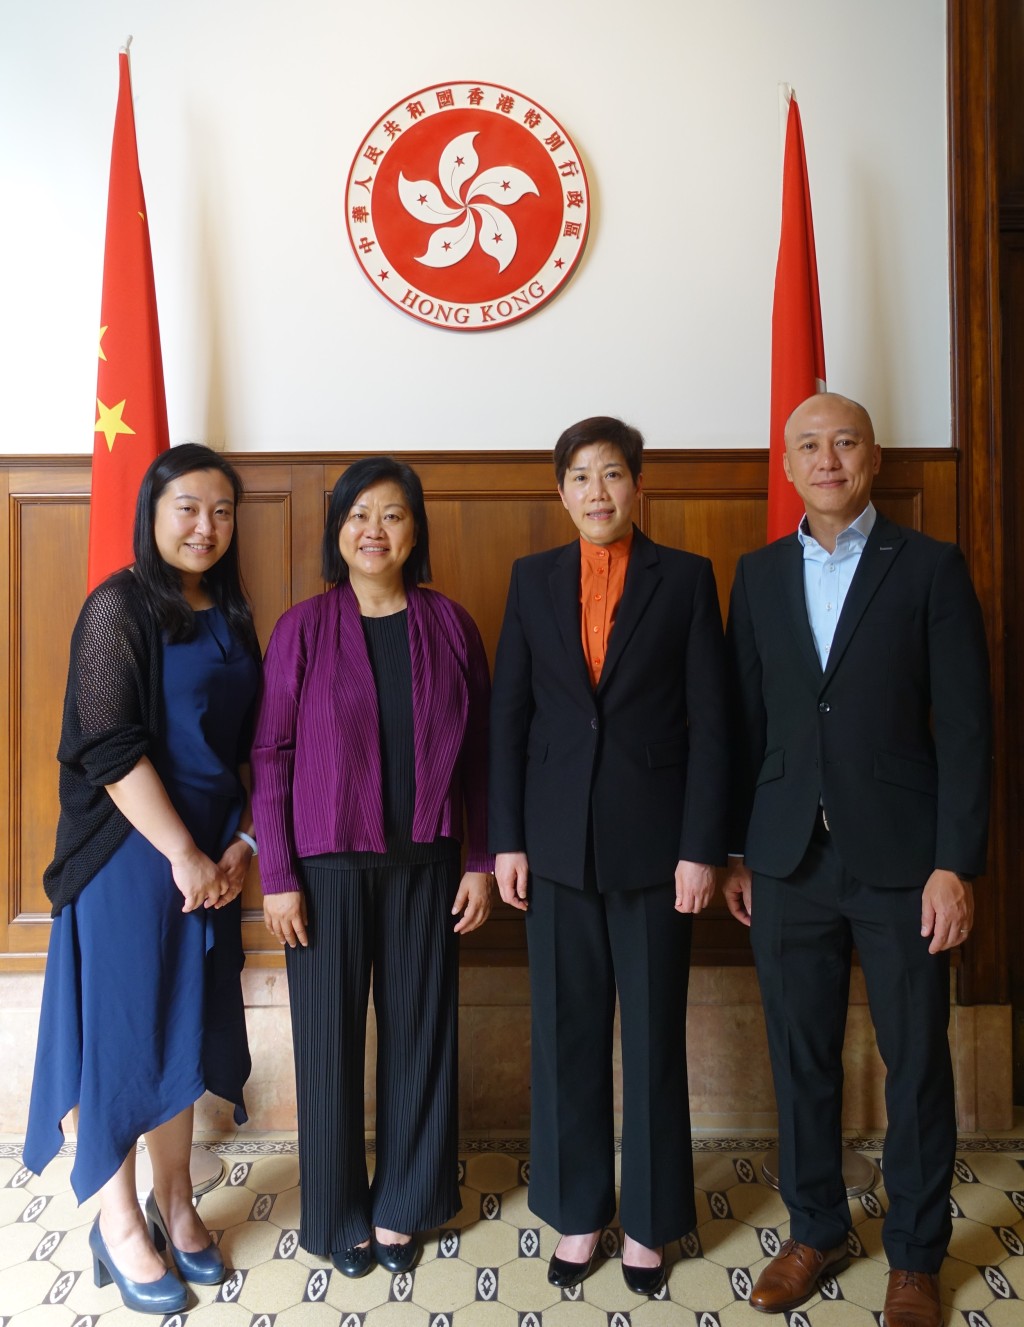 何佩珊率领代表团到访香港驻布鲁塞尔经济贸易办事处。政府新闻处图片